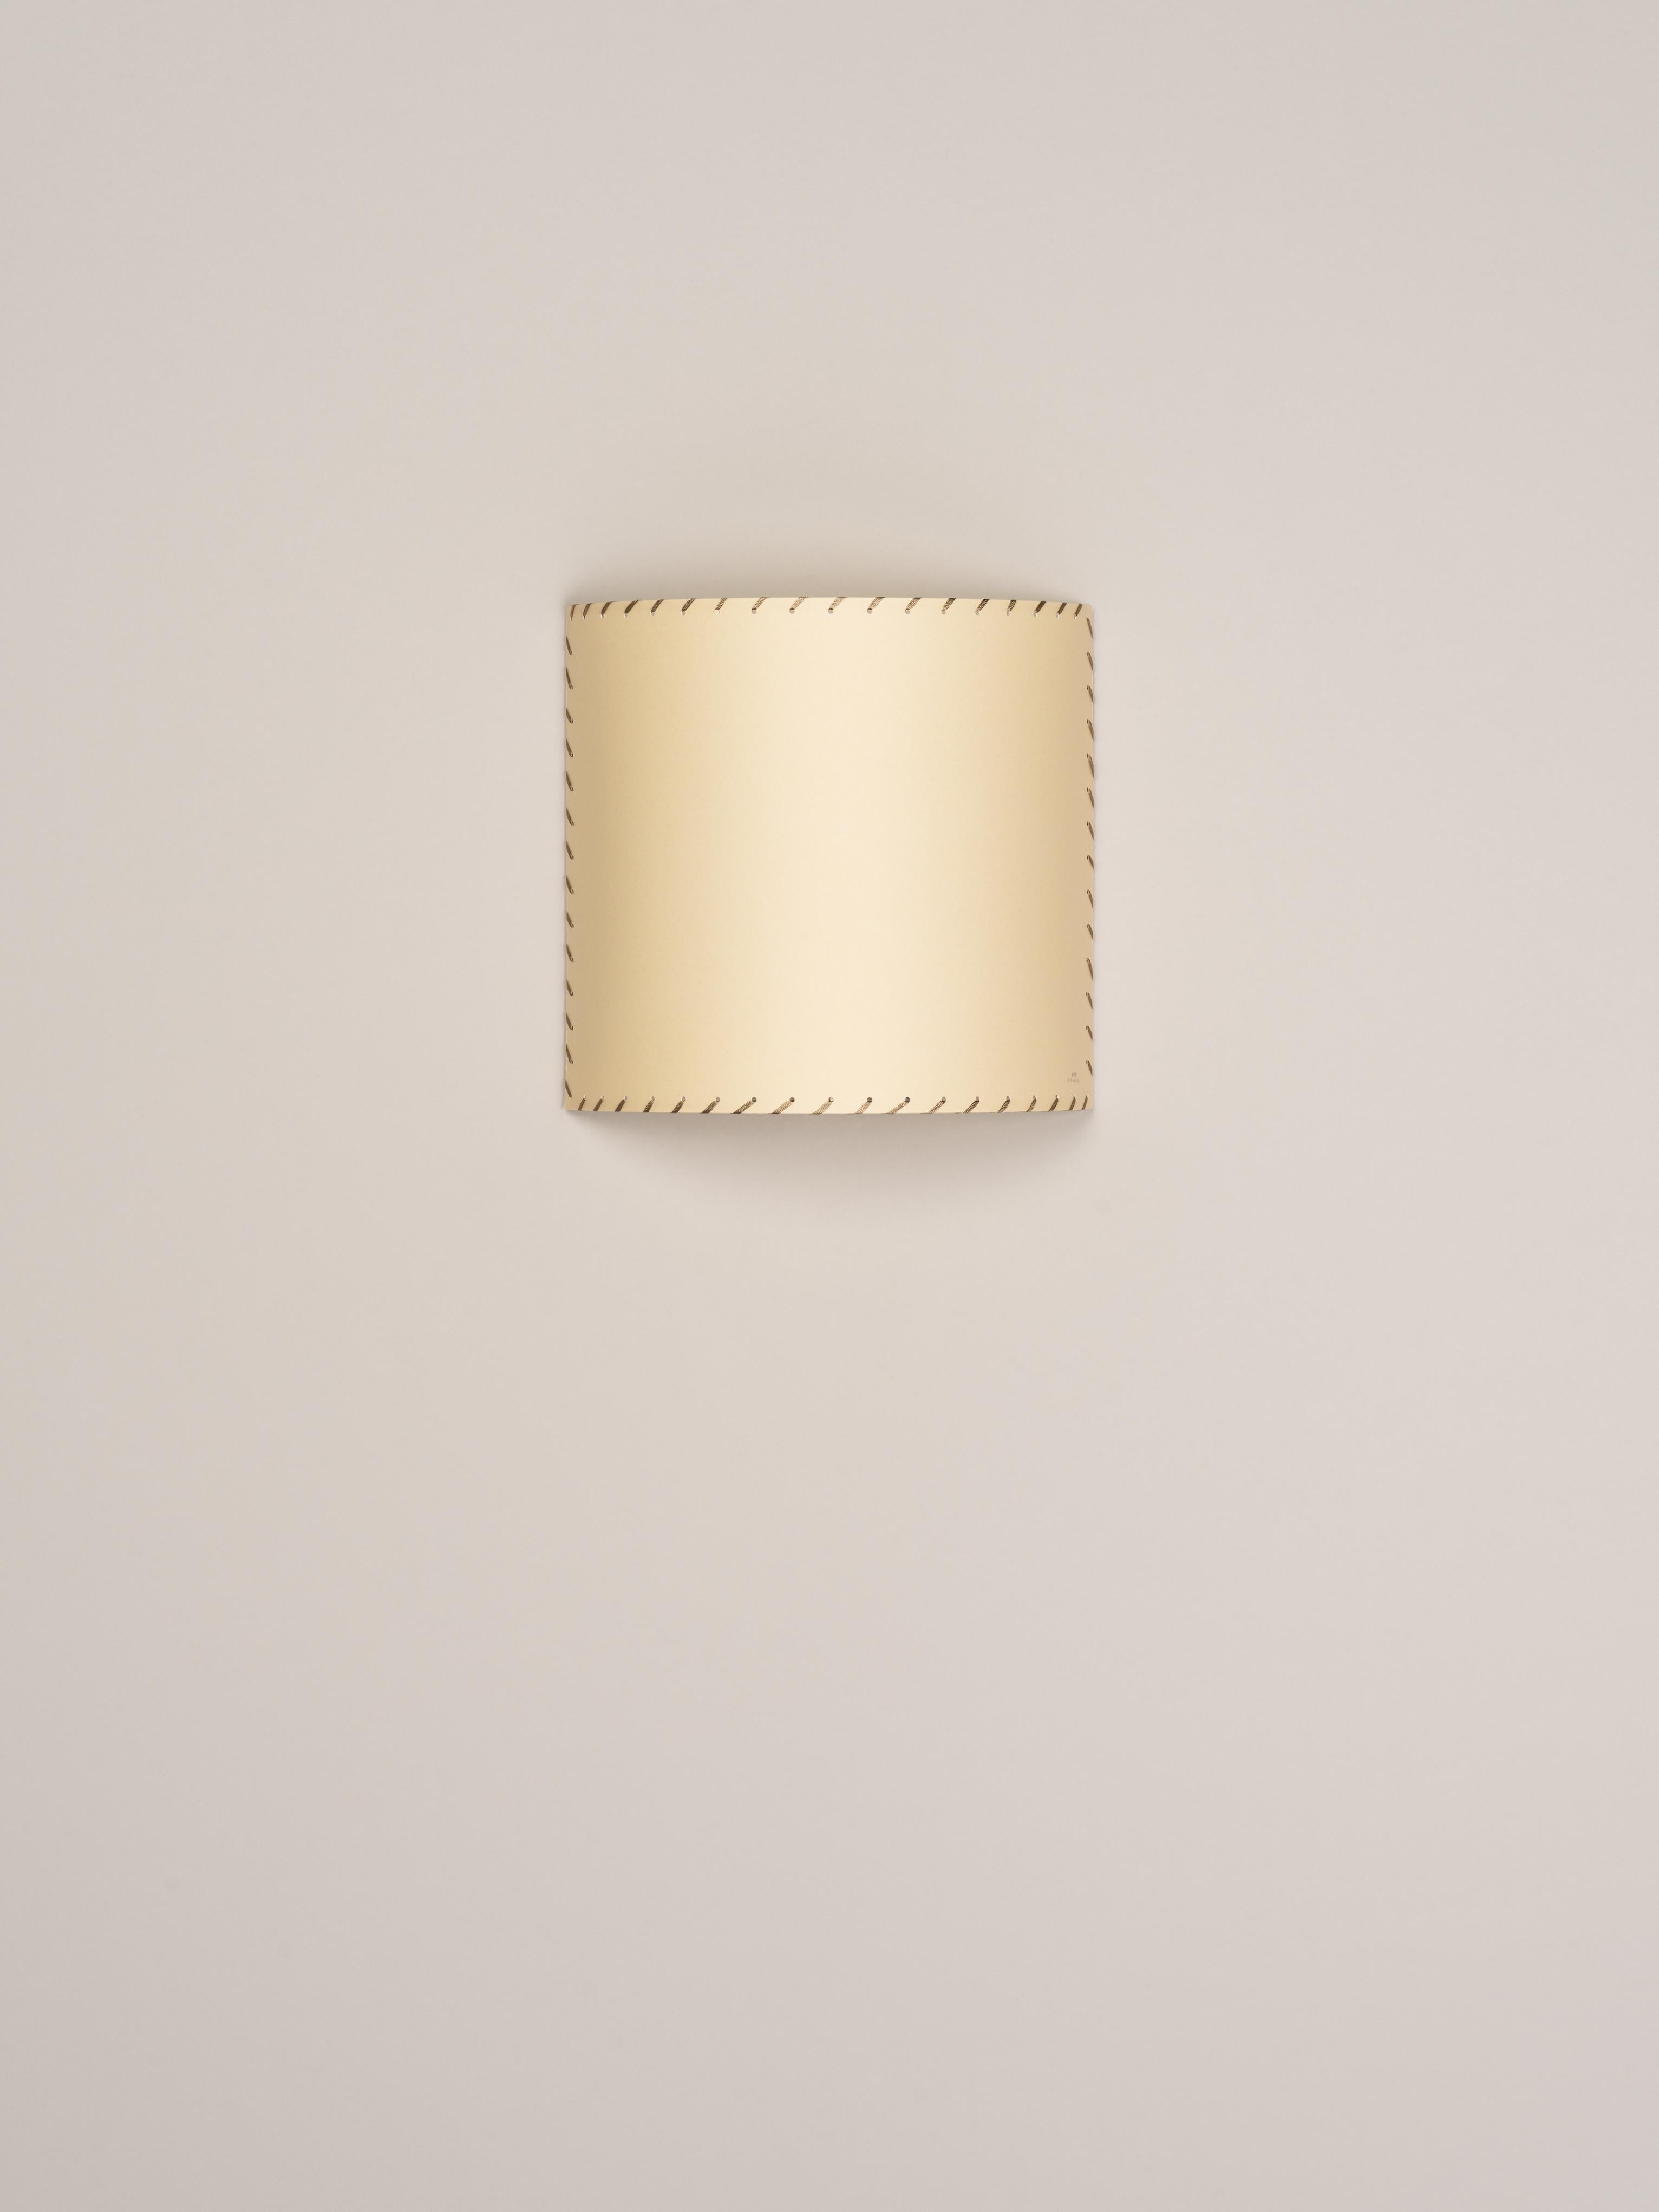 Applique Comodín Cuadrado beige de Santa & Cole
Dimensions : D 31 x L 13 x H 30 cm
Matériaux : Métal, parchemin cousu.

Cette applique murale minimaliste humanise les espaces neutres par sa sobriété colorée et fonctionnelle. L'abat-jour est